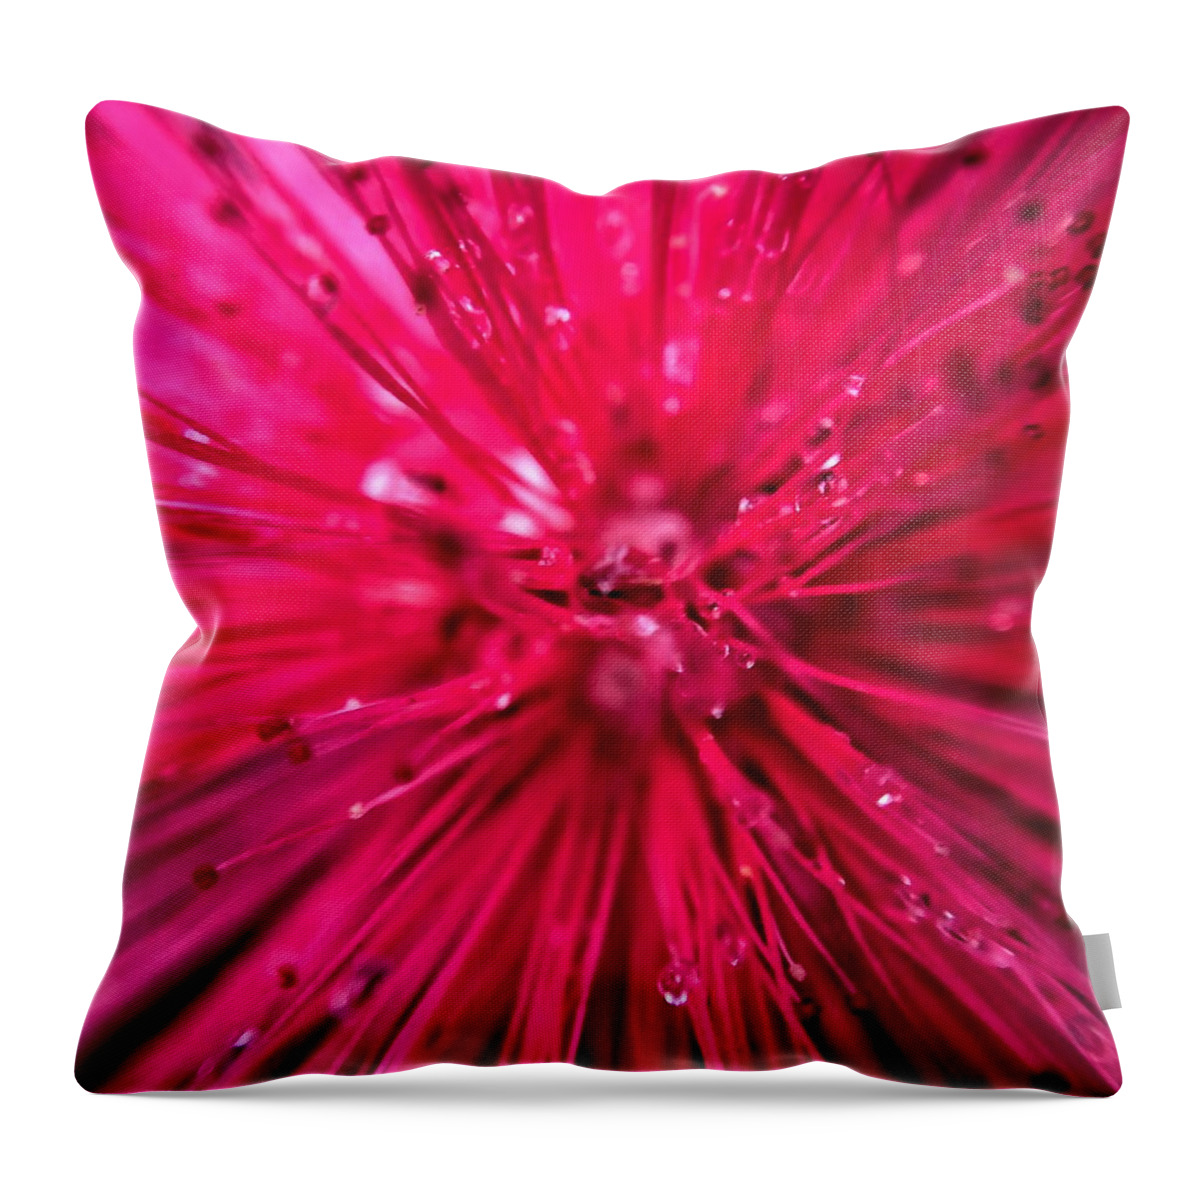 Pink Powder Puff Throw Pillow featuring the photograph Pink Powder Puff Flower Closeup by Jori Reijonen